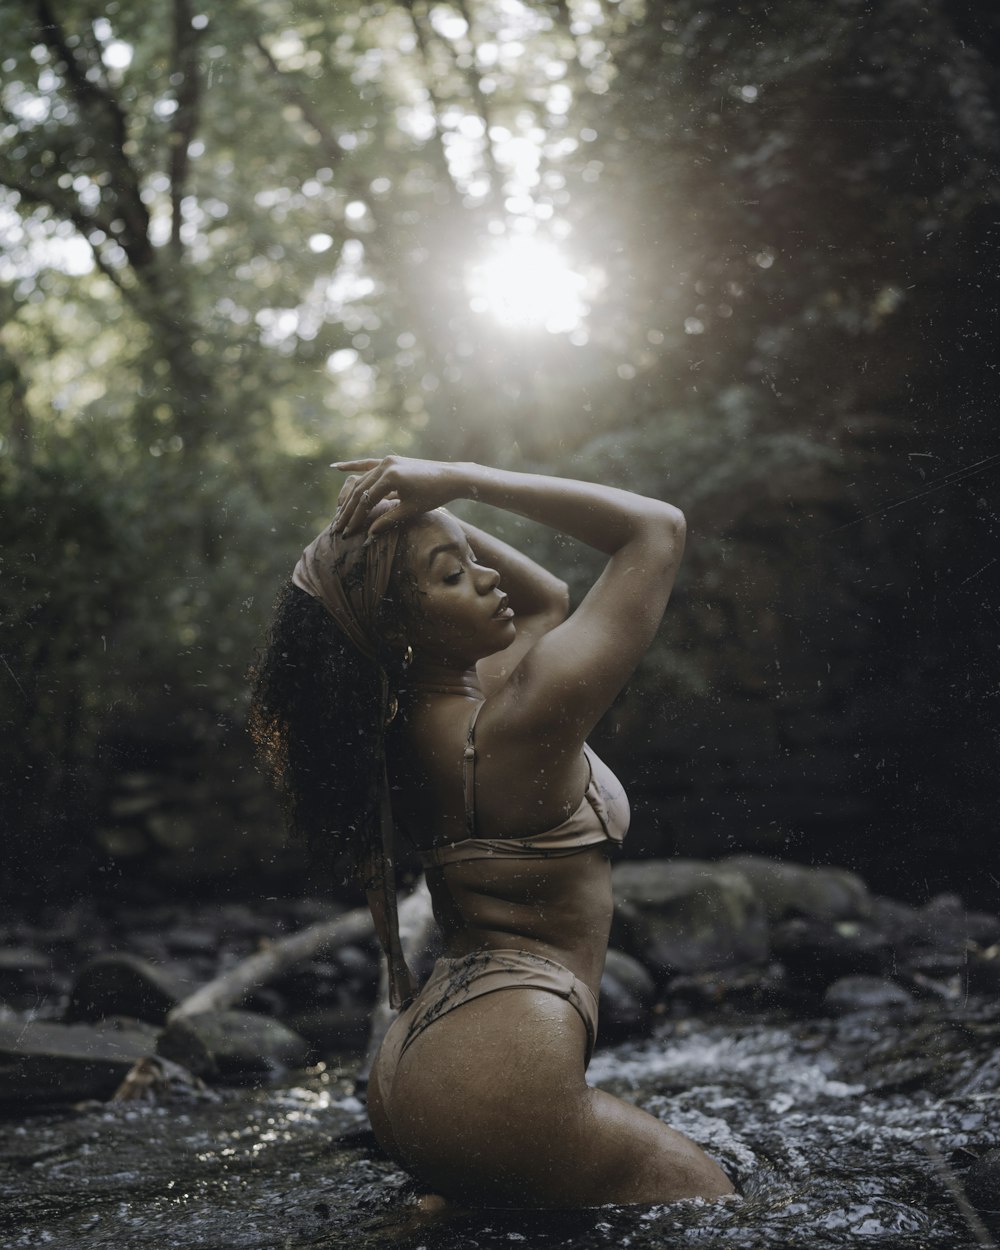 a woman in a bikini sitting in a river